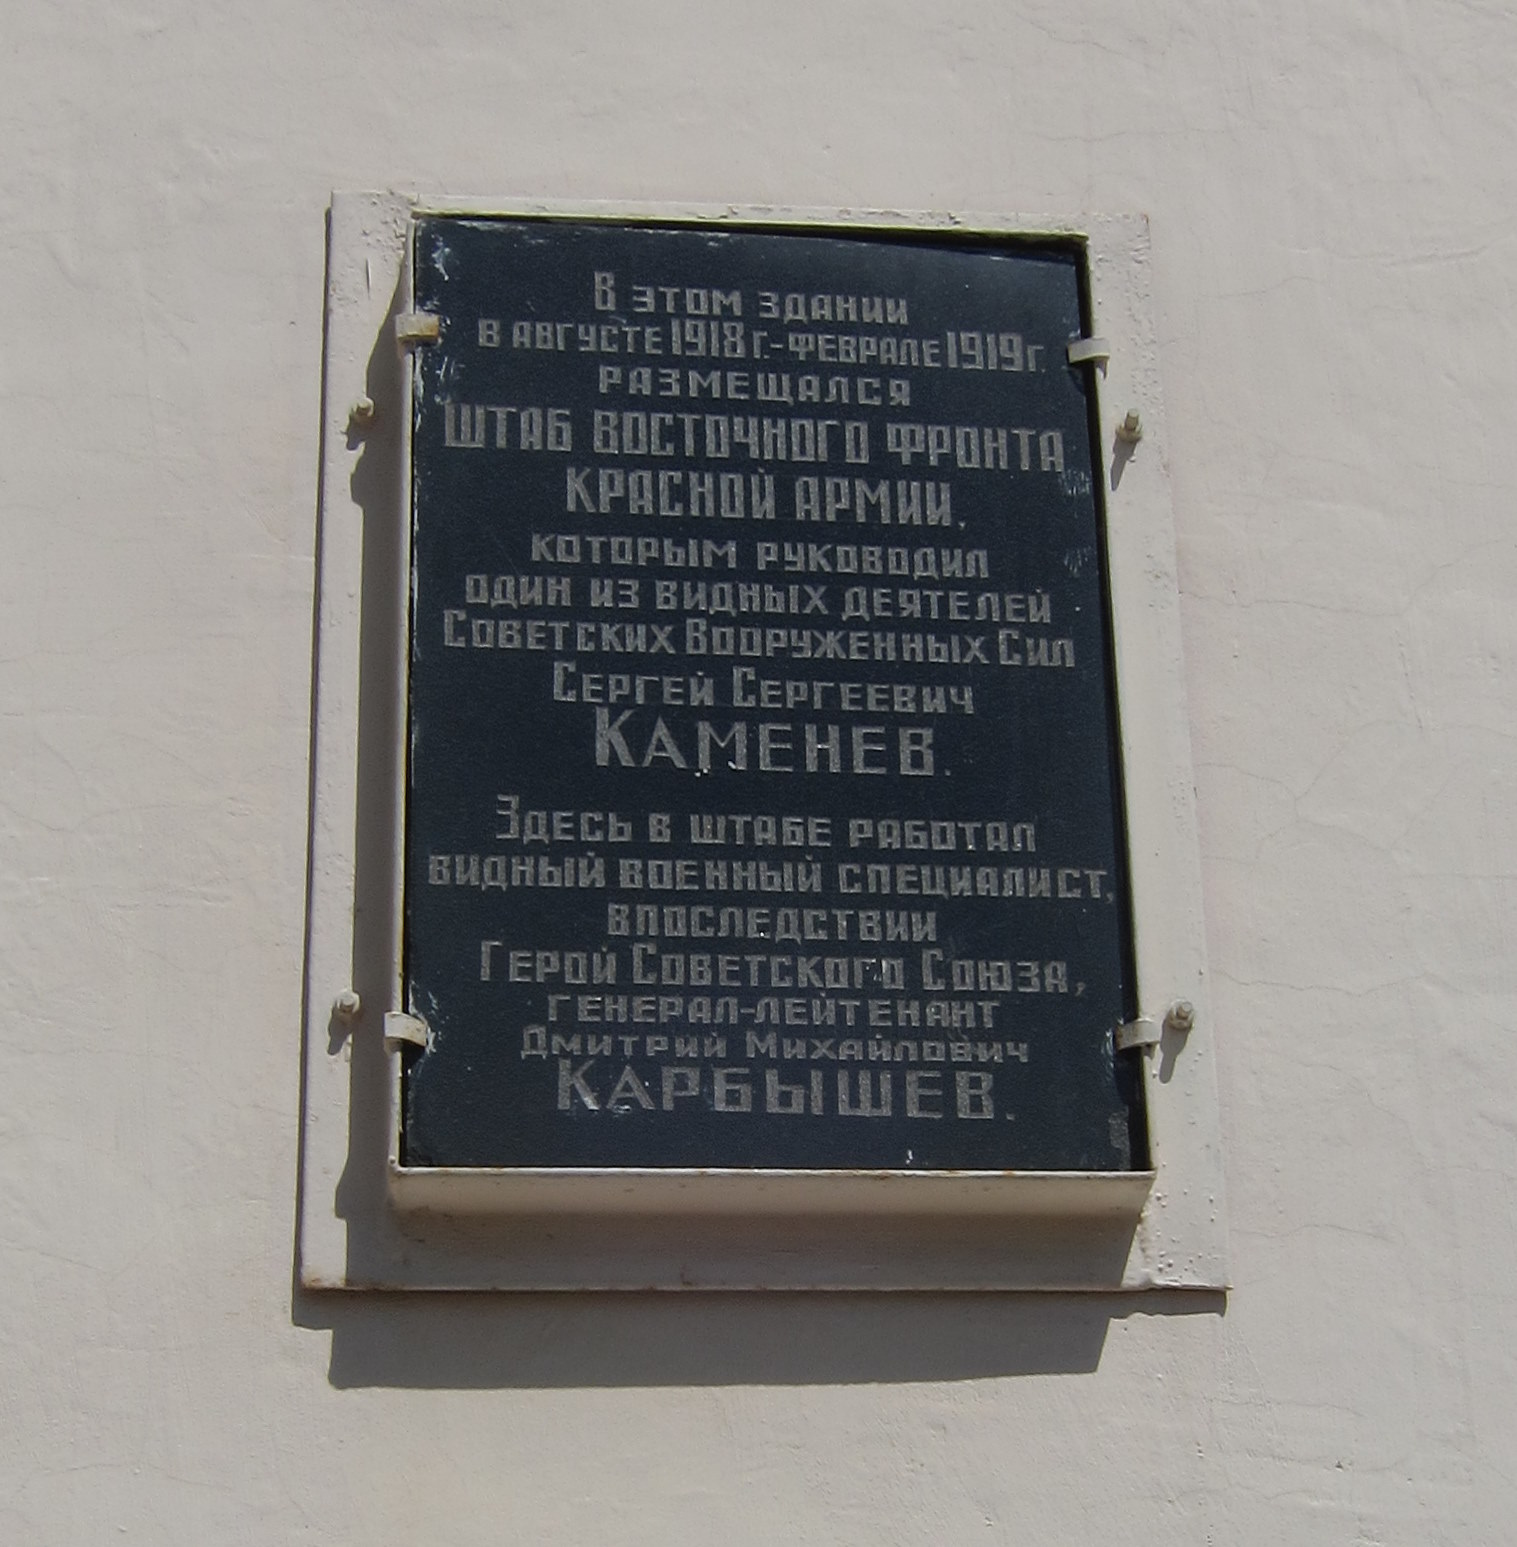 Мемориальная табличка на здании ННГУ (со стороны главного входа)